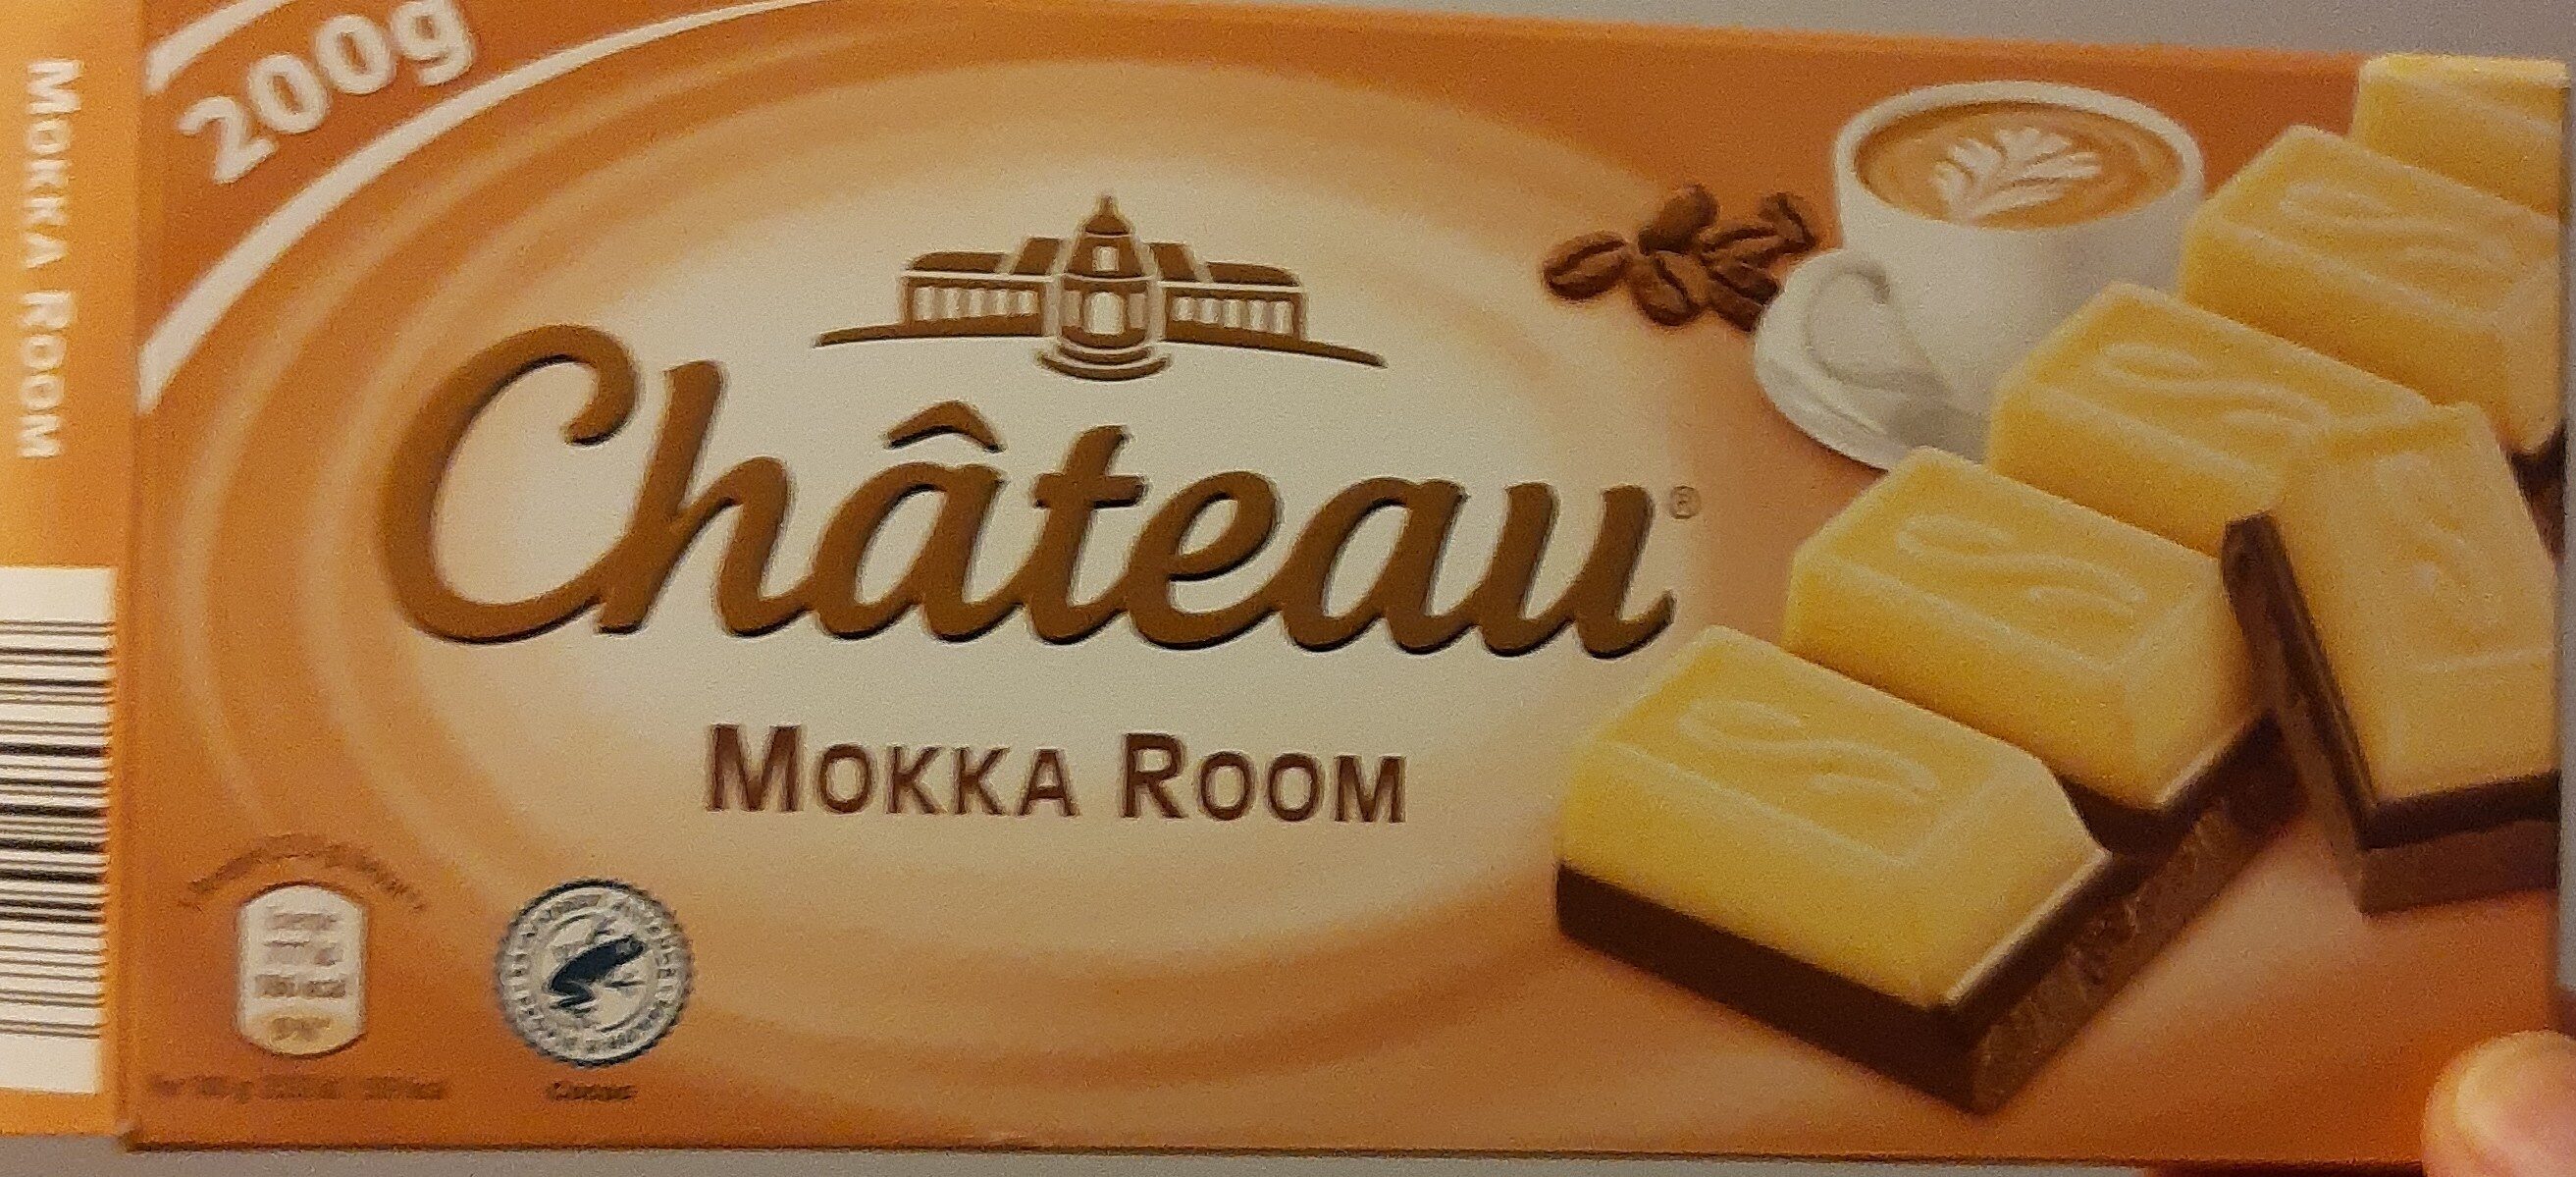 Mokka room - Product